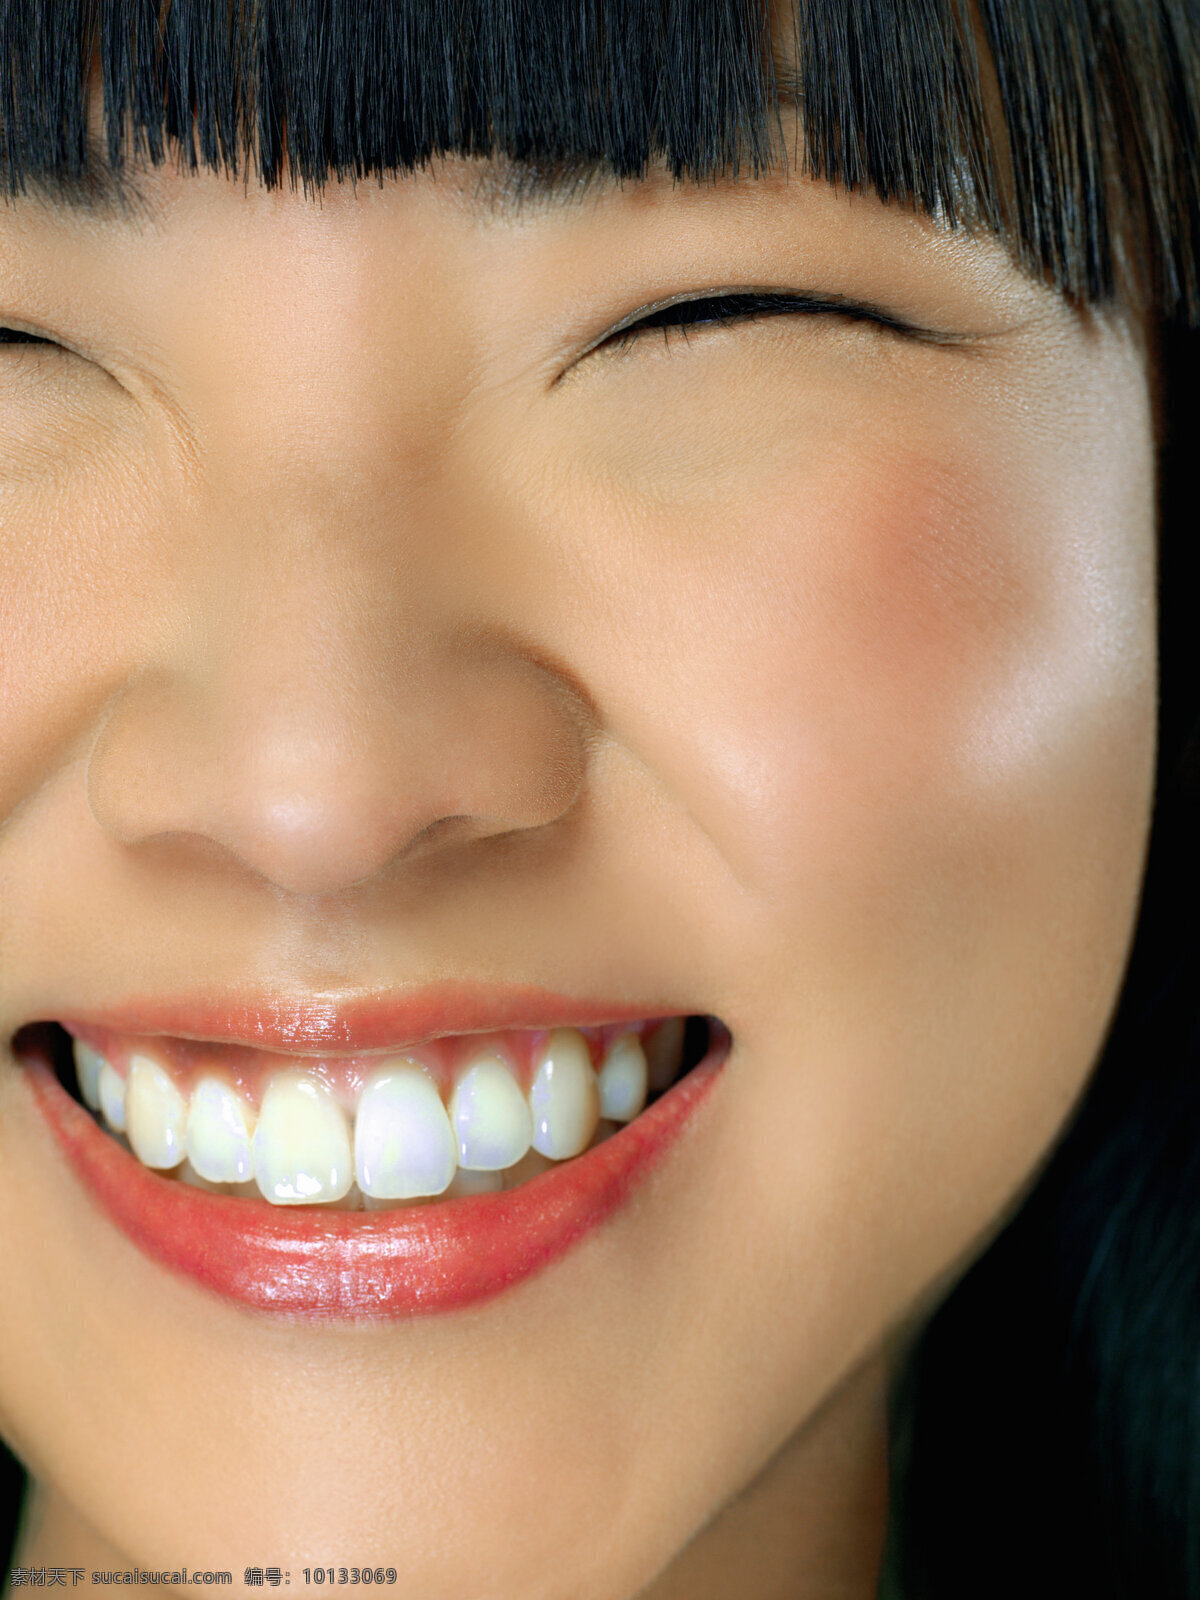 高清 东方女性 微笑 脸部 特写 洁白牙齿 可爱 女生 人物图库 女性女人 摄影图库